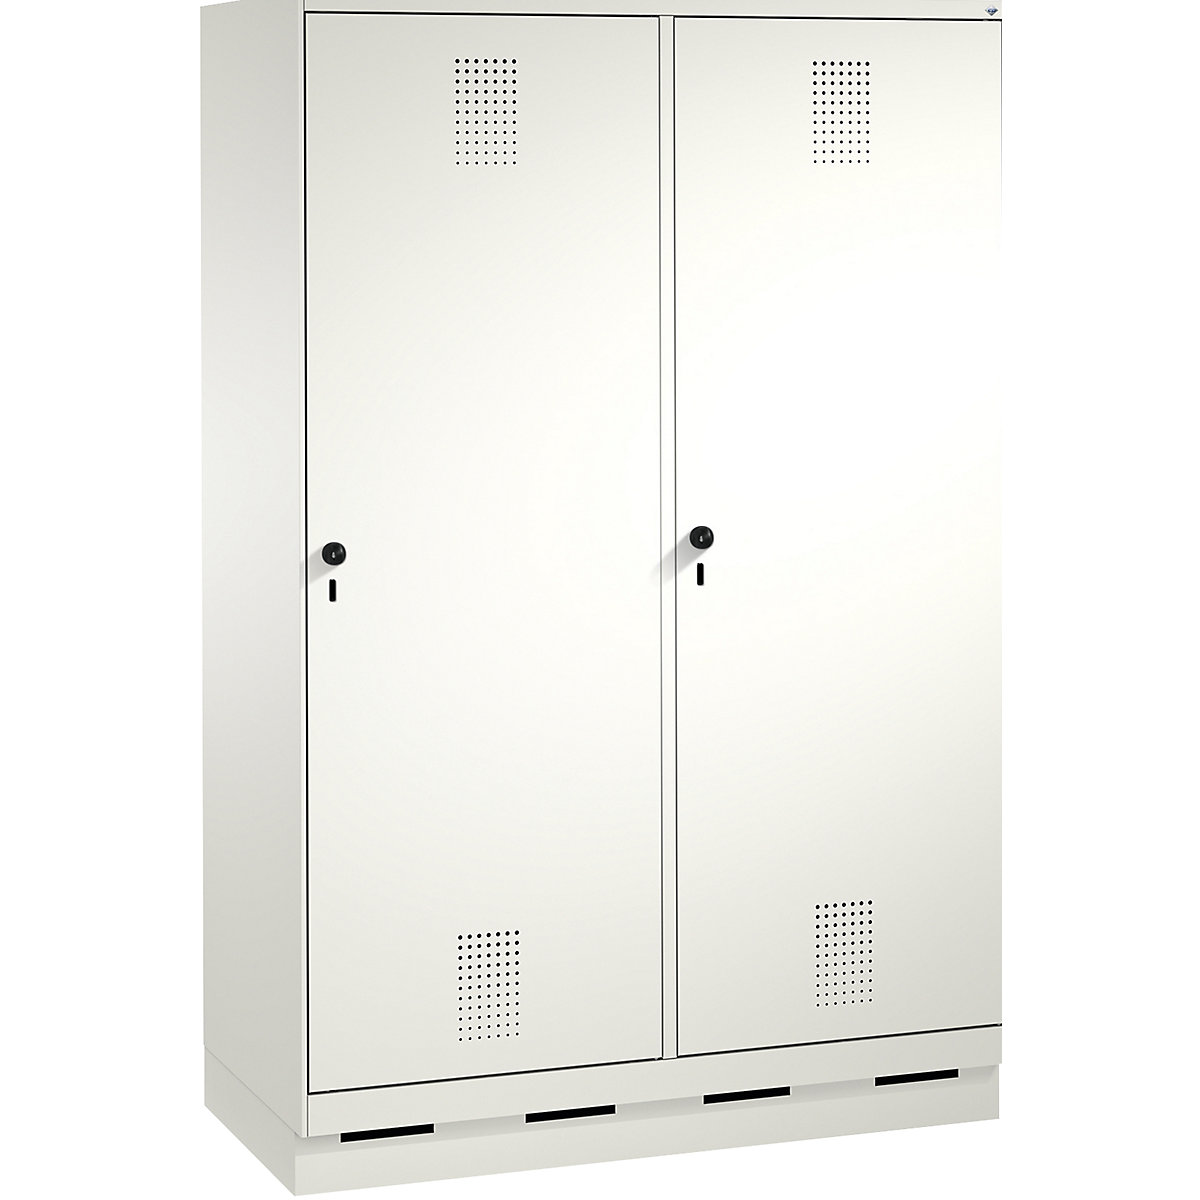 EVOLO Garderobenschrank, Tür über 2 Abteile, mit Sockel C+P, 4 Abteile, 2 Türen, Abteilbreite 300 mm, verkehrsweiß / verkehrsweiß-14